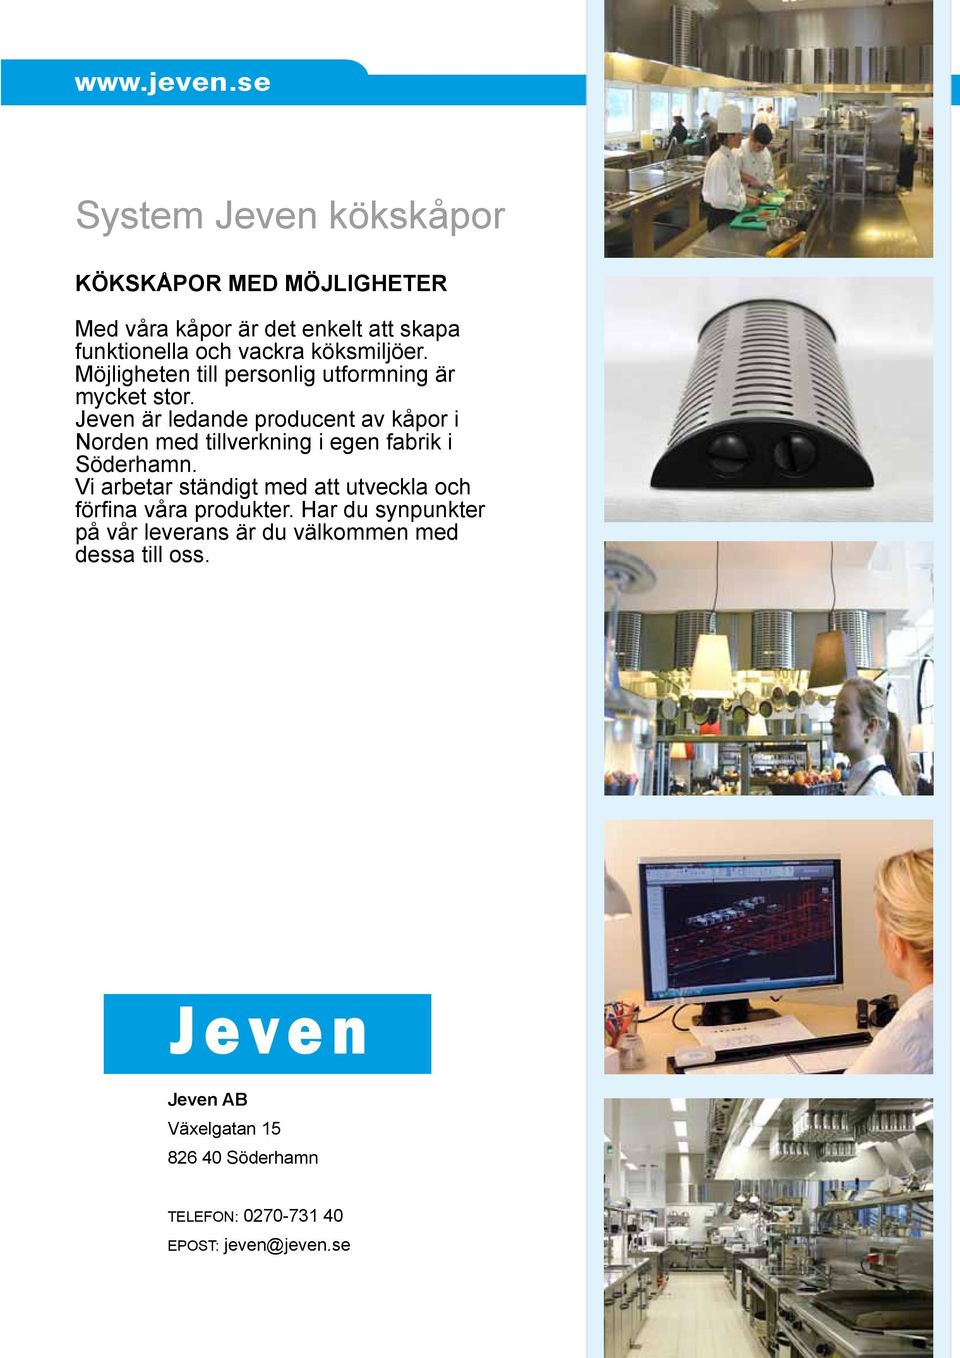 Jeven är ledande producent av kåpor i Norden med tillverkning i egen fabrik i Söderhamn.